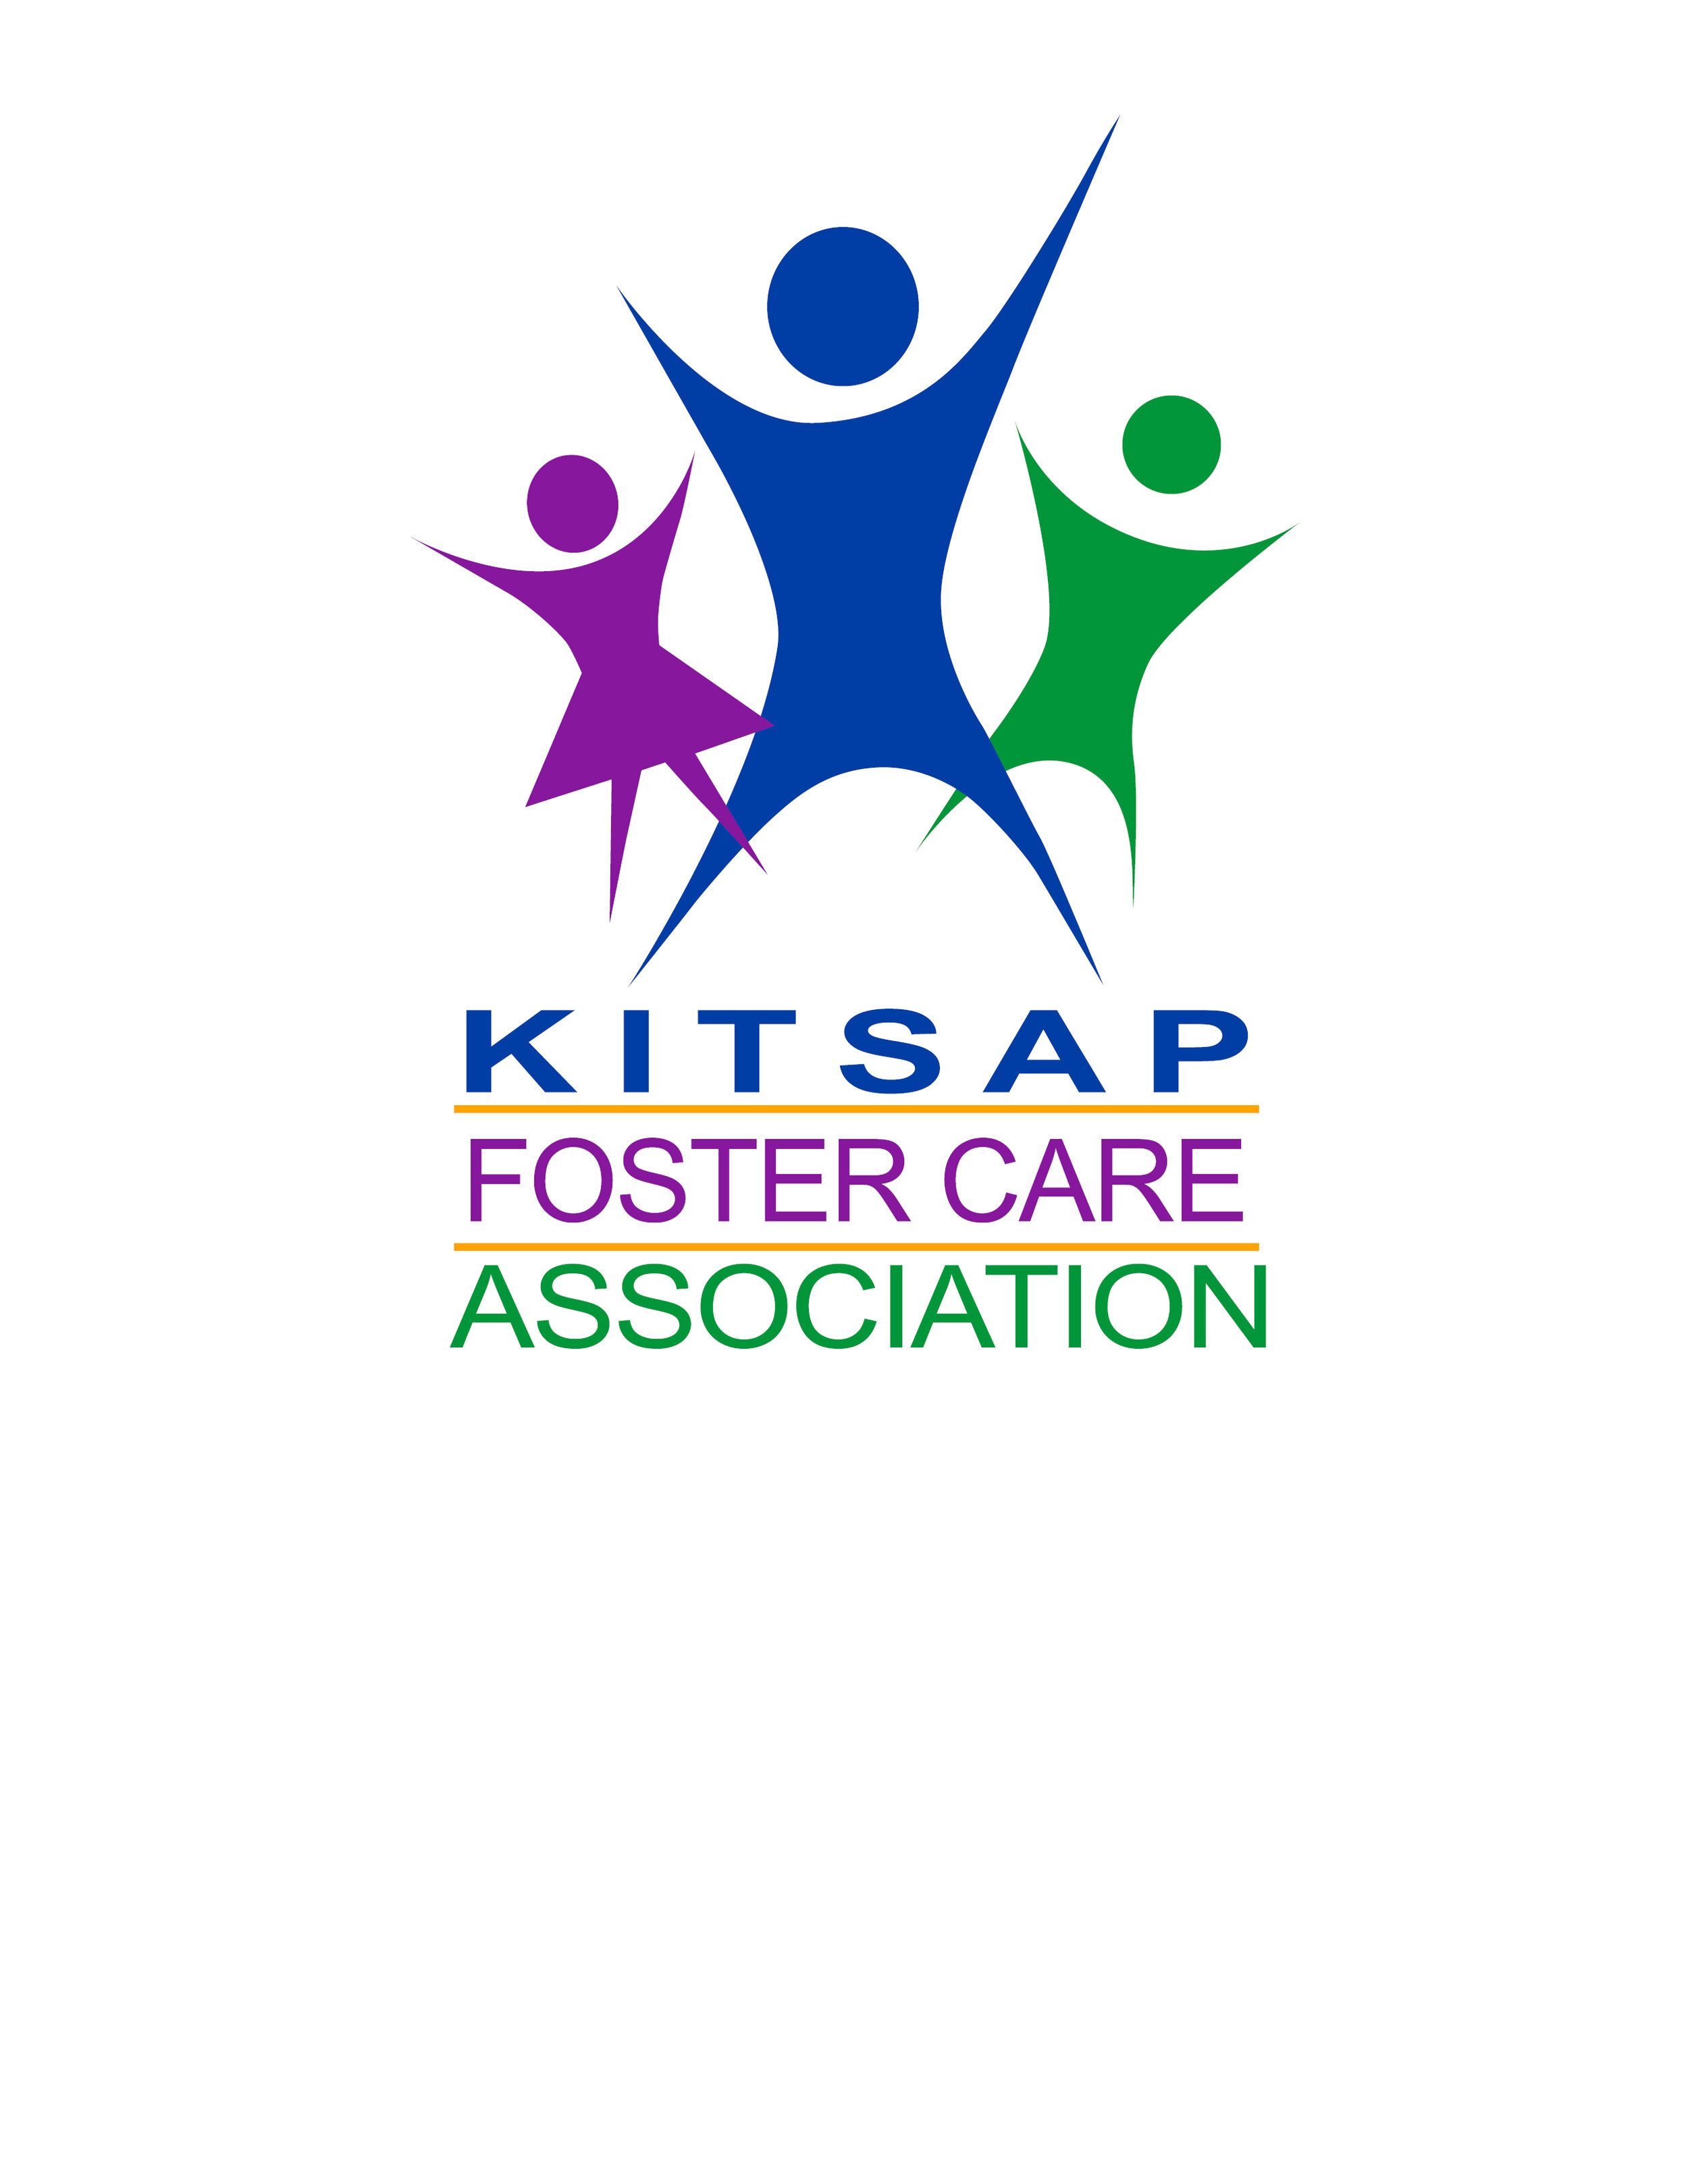 Kitsap Foster Care Association